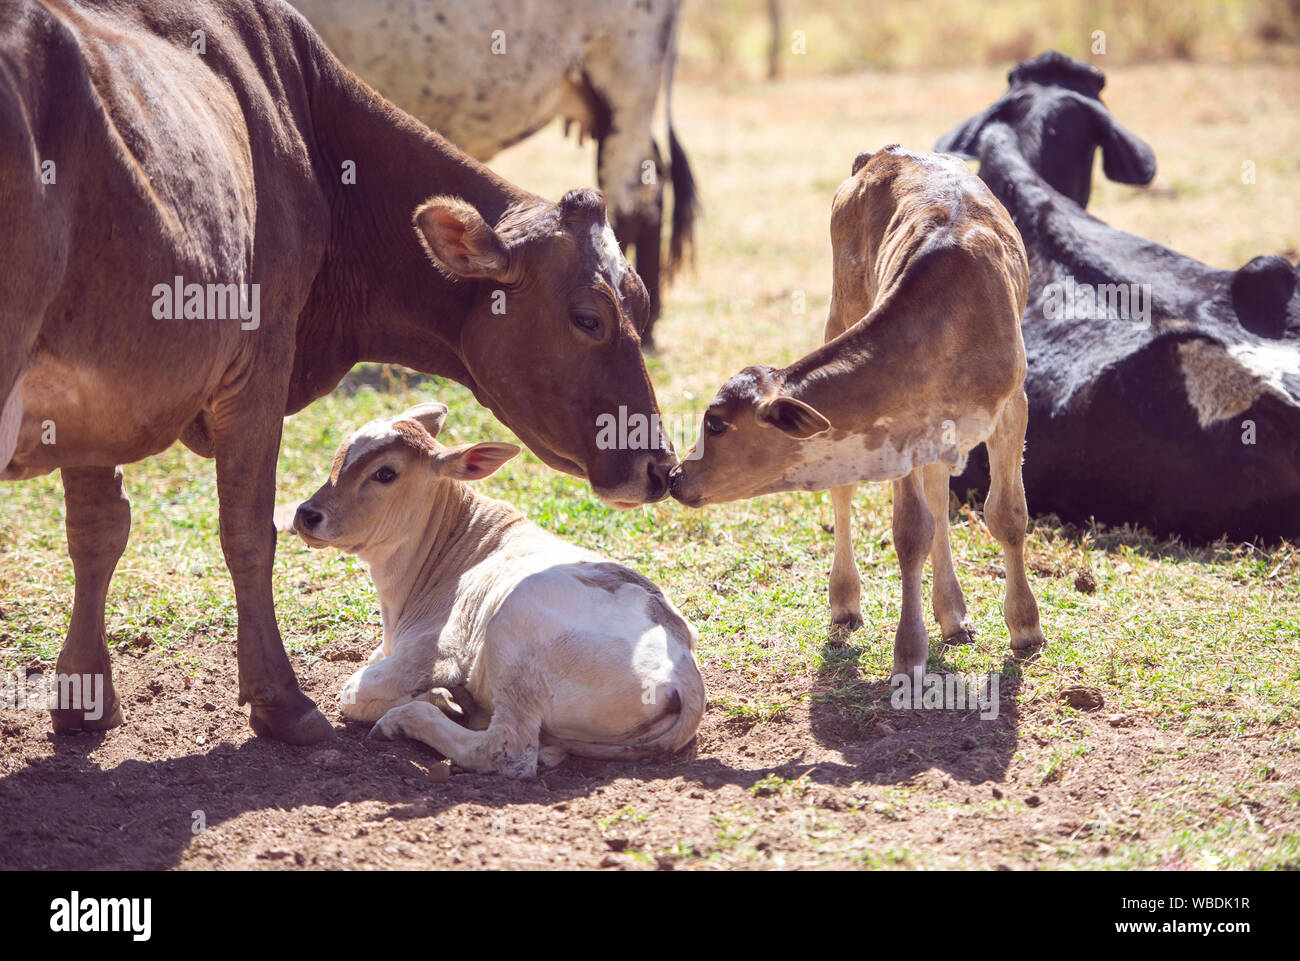 Immagine rurale. Vacca madre avendo cura di vitello neonato. Concetto di immagine di vita contadina. Foto Stock